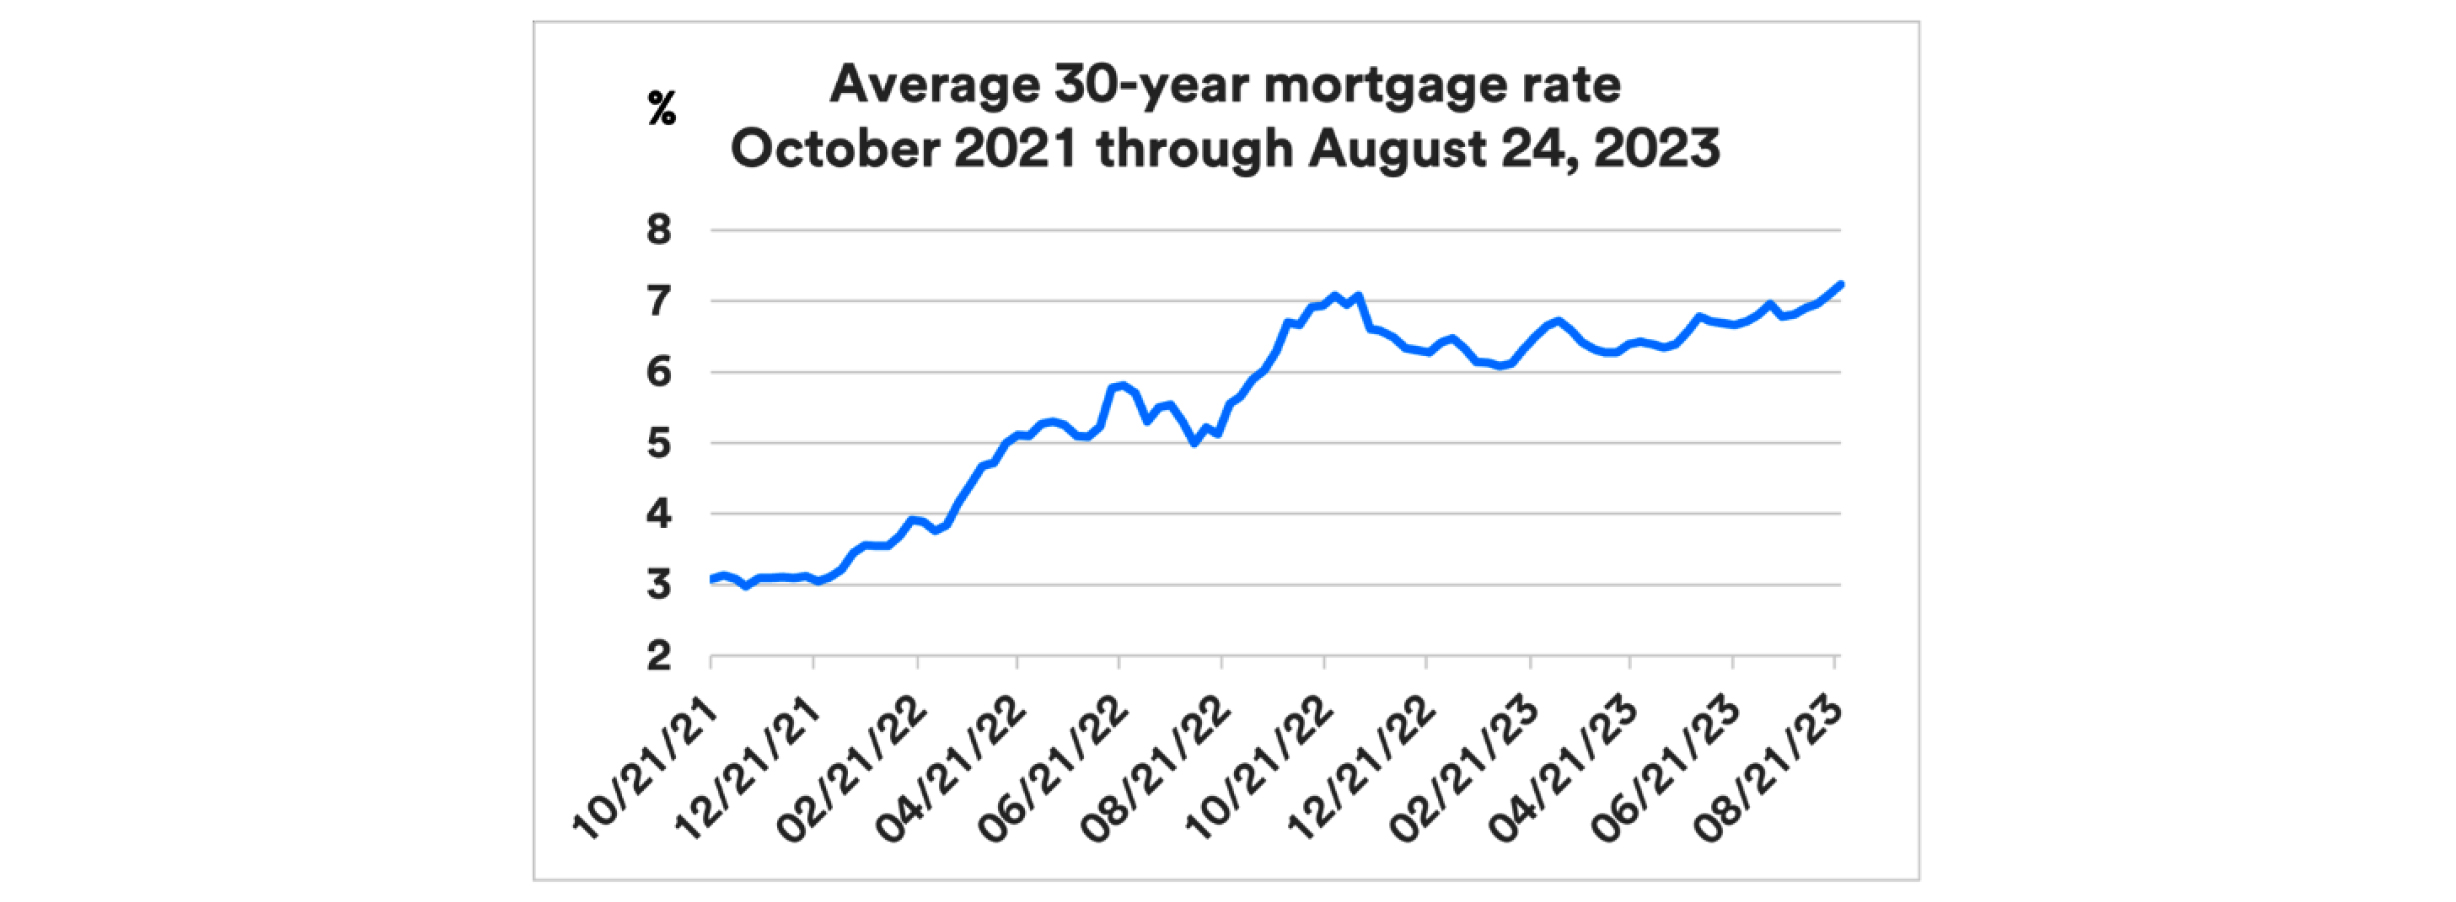 Average 30-year mortgage rates